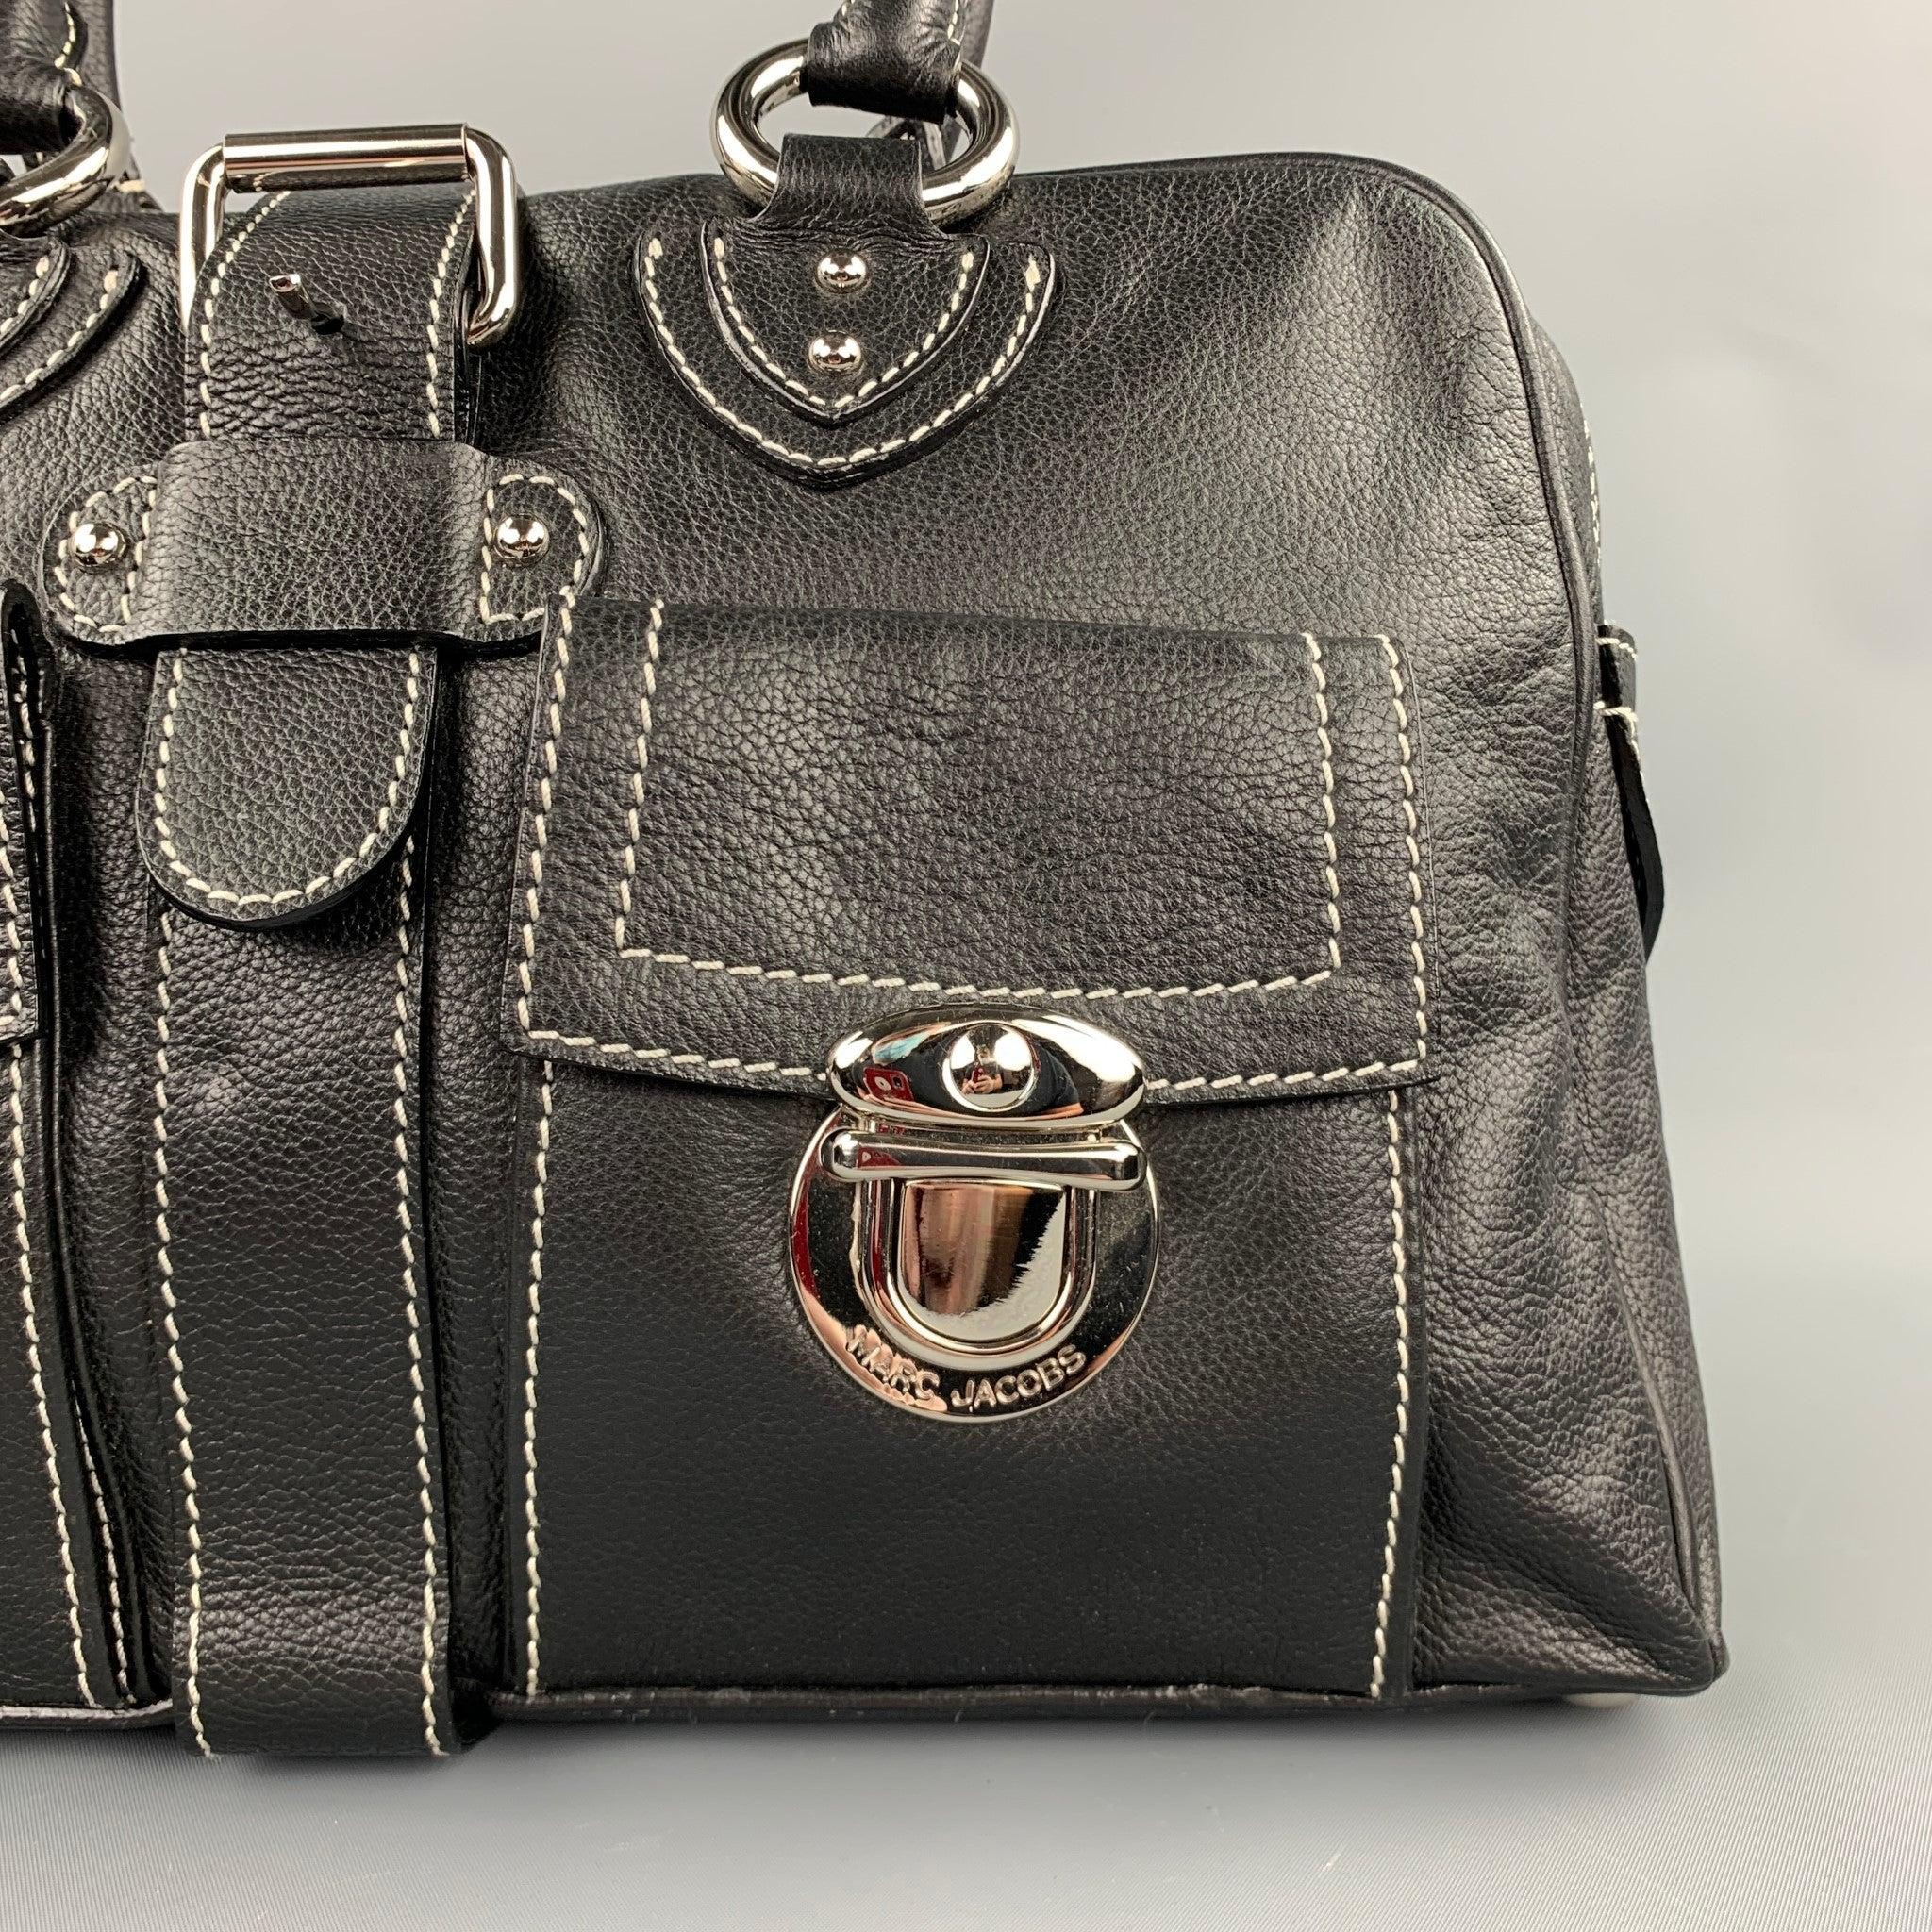 MARC JACOBS Handtasche aus schwarzem Leder mit Kontrastnähten, Fronttaschen, silberfarbener Hardware, Innenfächern und einem Reißverschluss. Made in Italy.sehr gut
Gebrauchtes Zustand. 

Abmessungen: 
  Länge: 15 Zoll 
Breite: 3,5 Zoll 
Höhe: 8,5